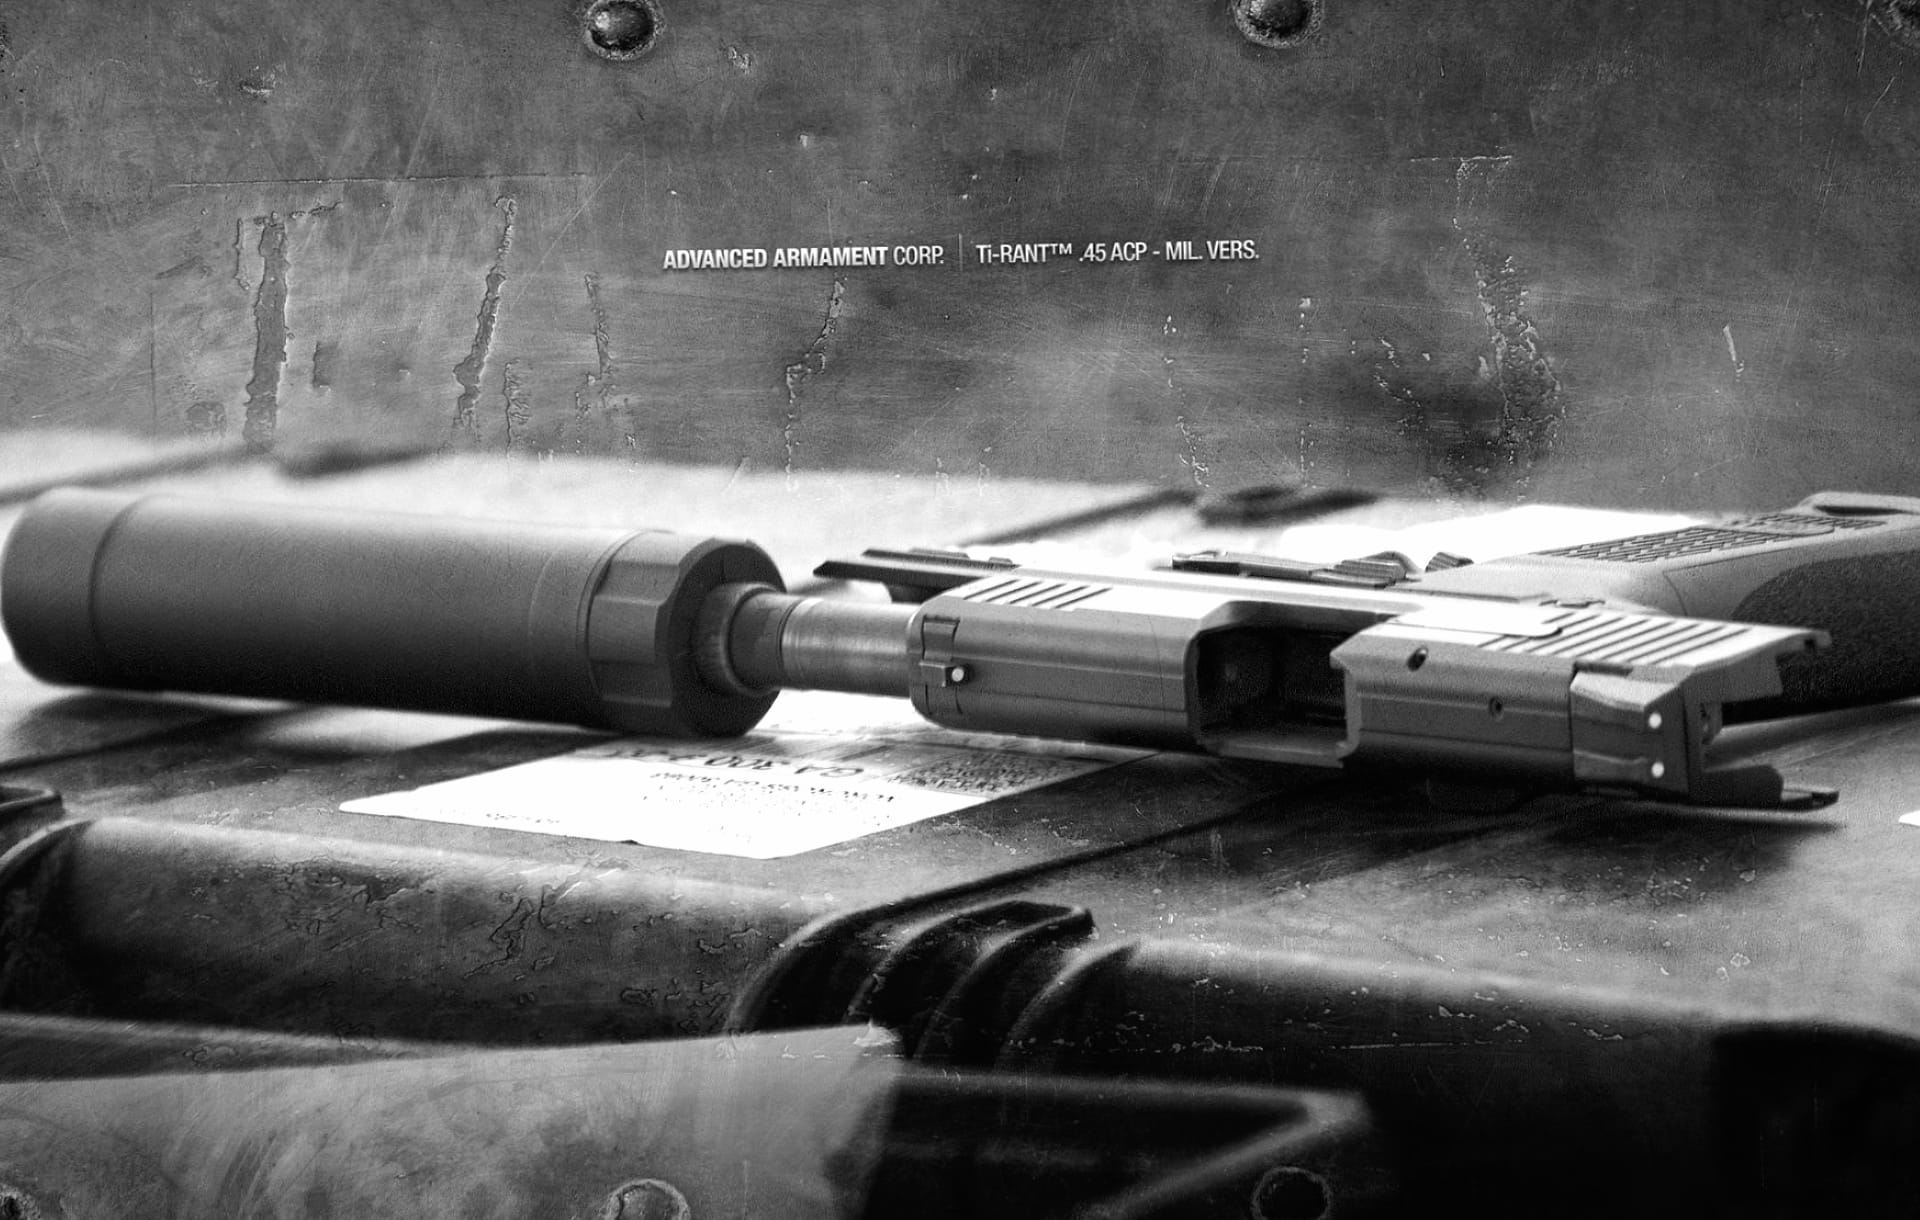 Advanced Armament Ti-Rant Pistol at 2048 x 2048 iPad size wallpapers HD quality